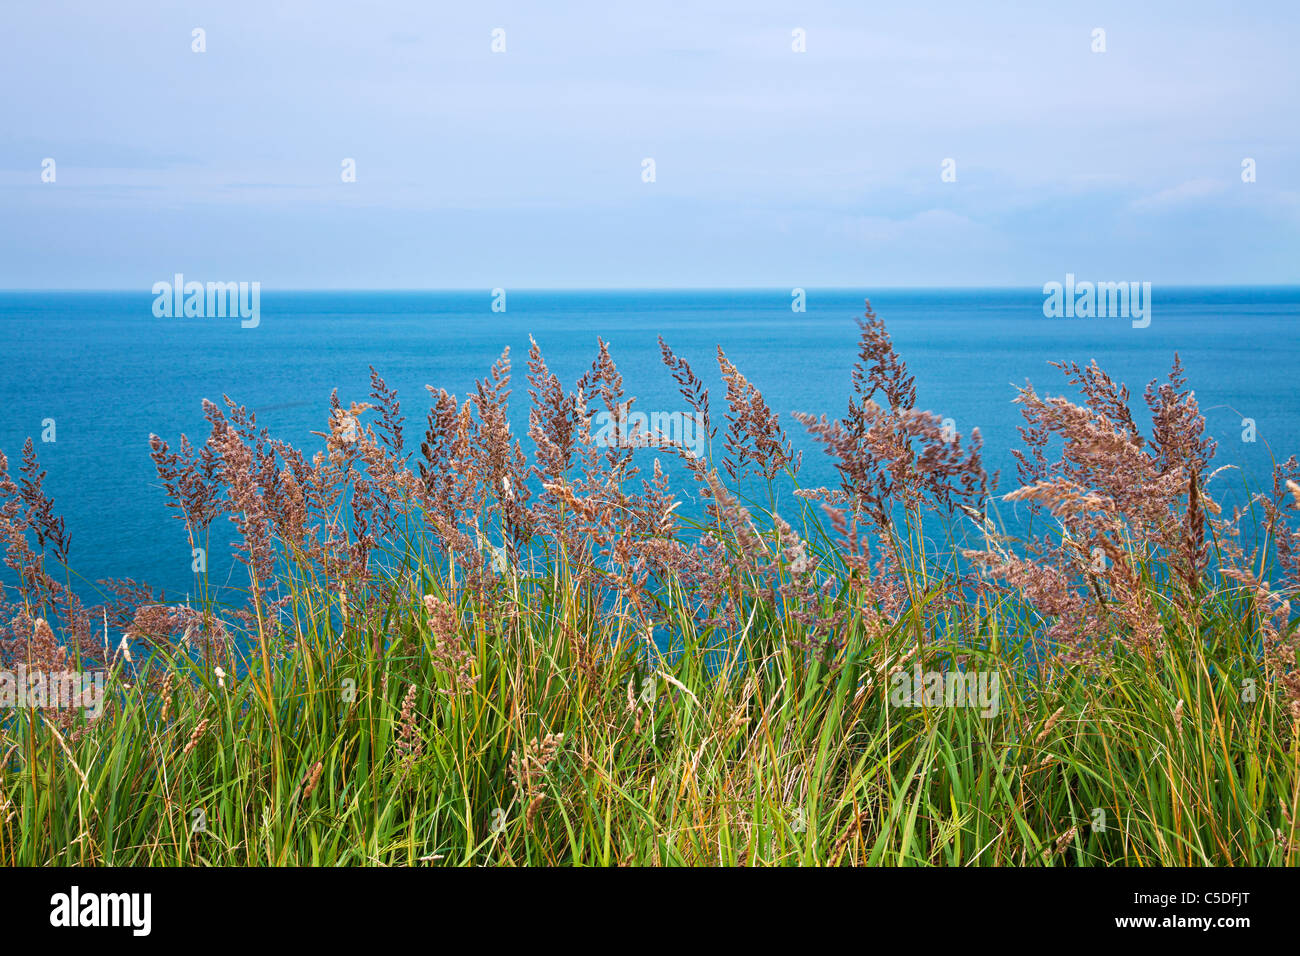 Une simple image de graminées côtières avec le bleu de la mer et l'horizon au-delà. Banque D'Images